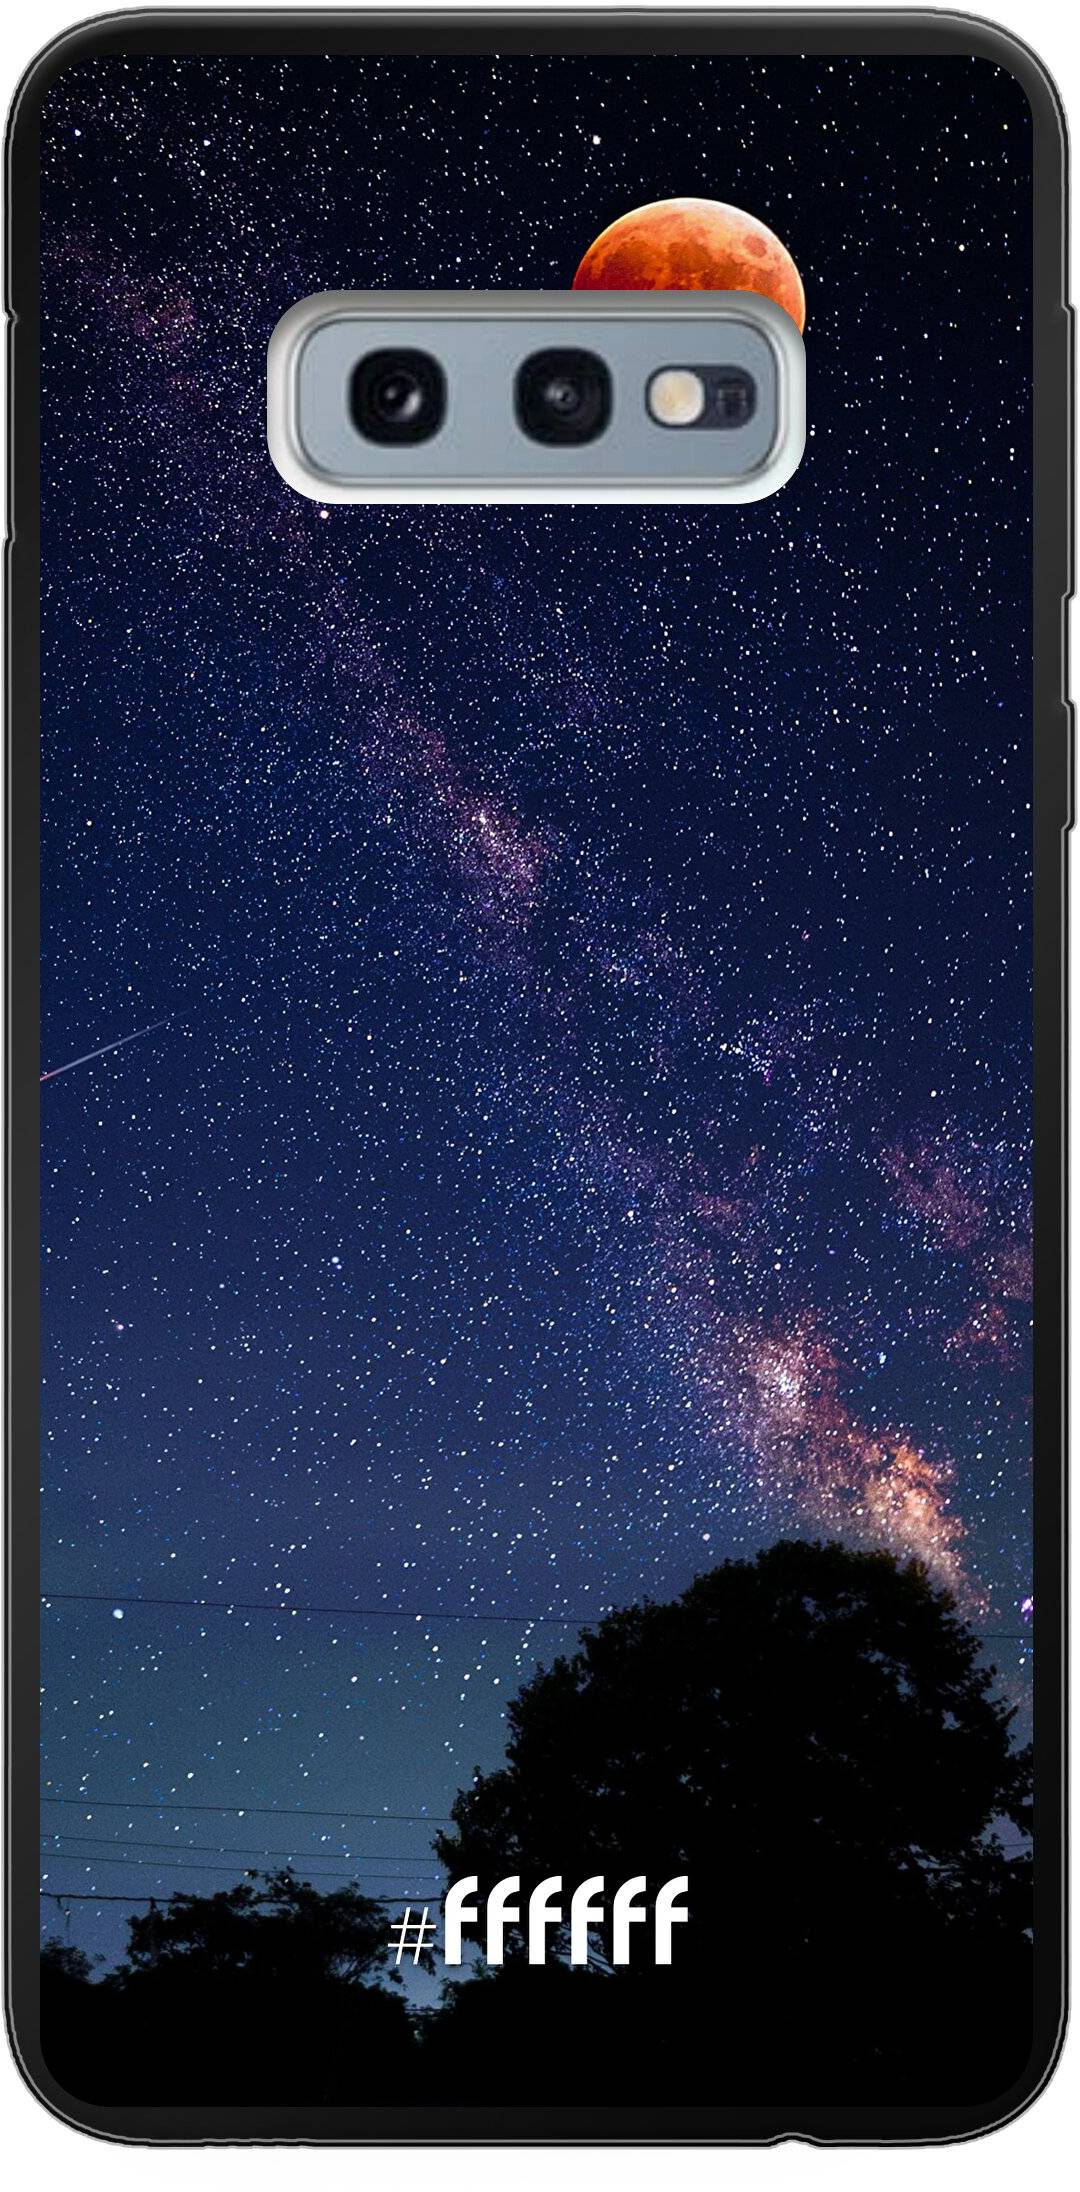 Full Moon Galaxy S10e